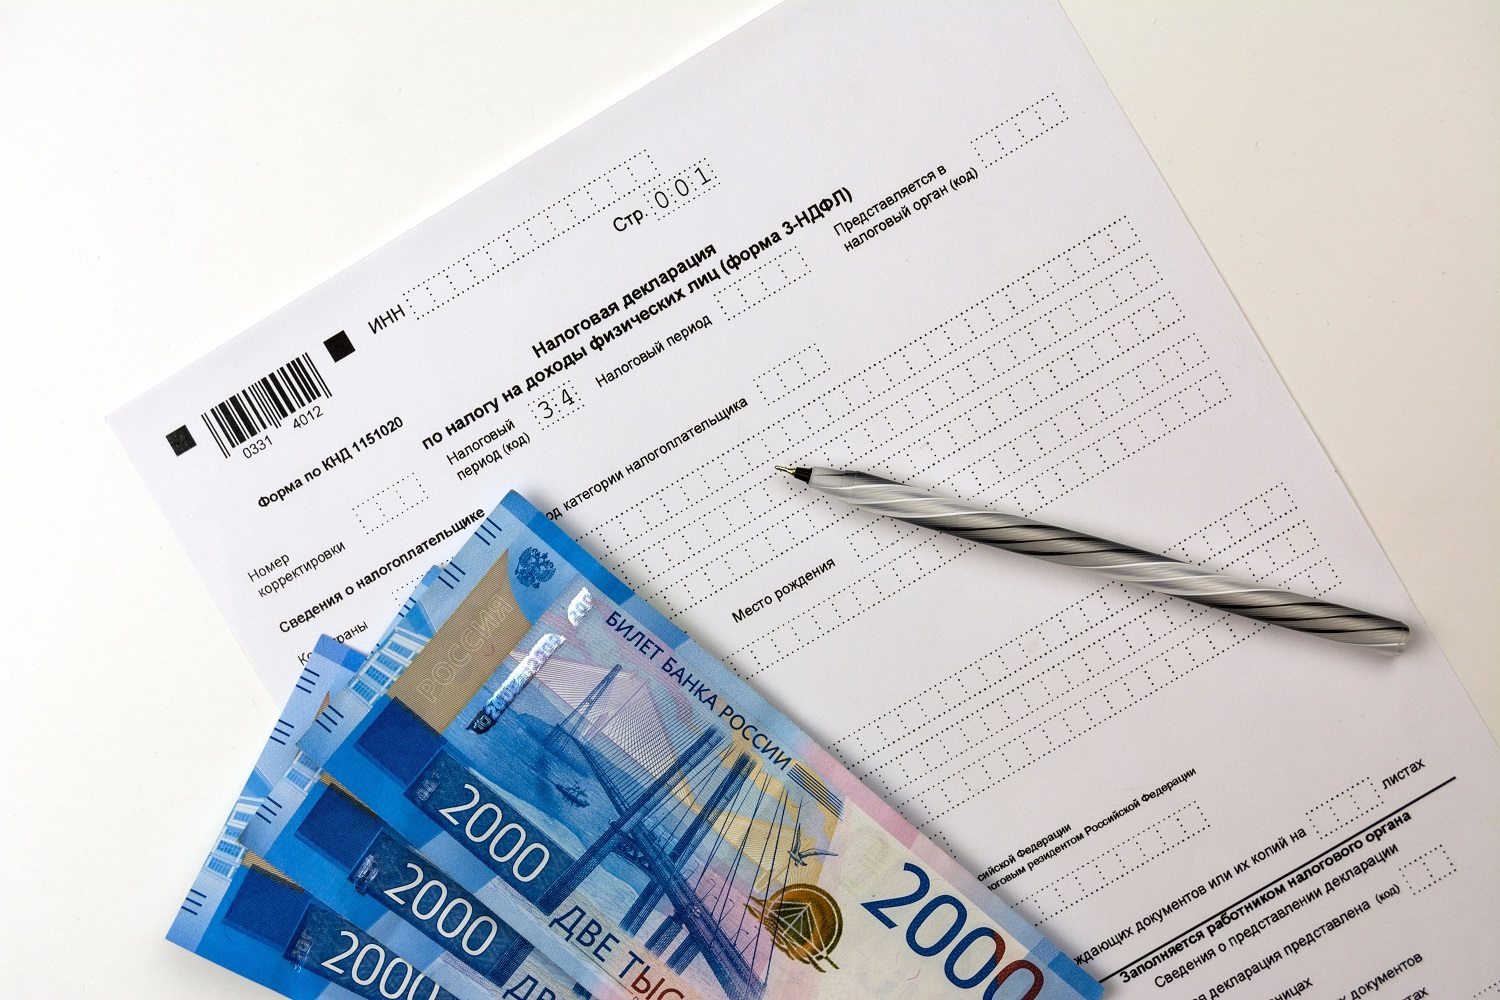 Một bản sao trống của tờ khai thuế Nga, tiền giấy rúp và một cây bút đều nằm trên bàn.